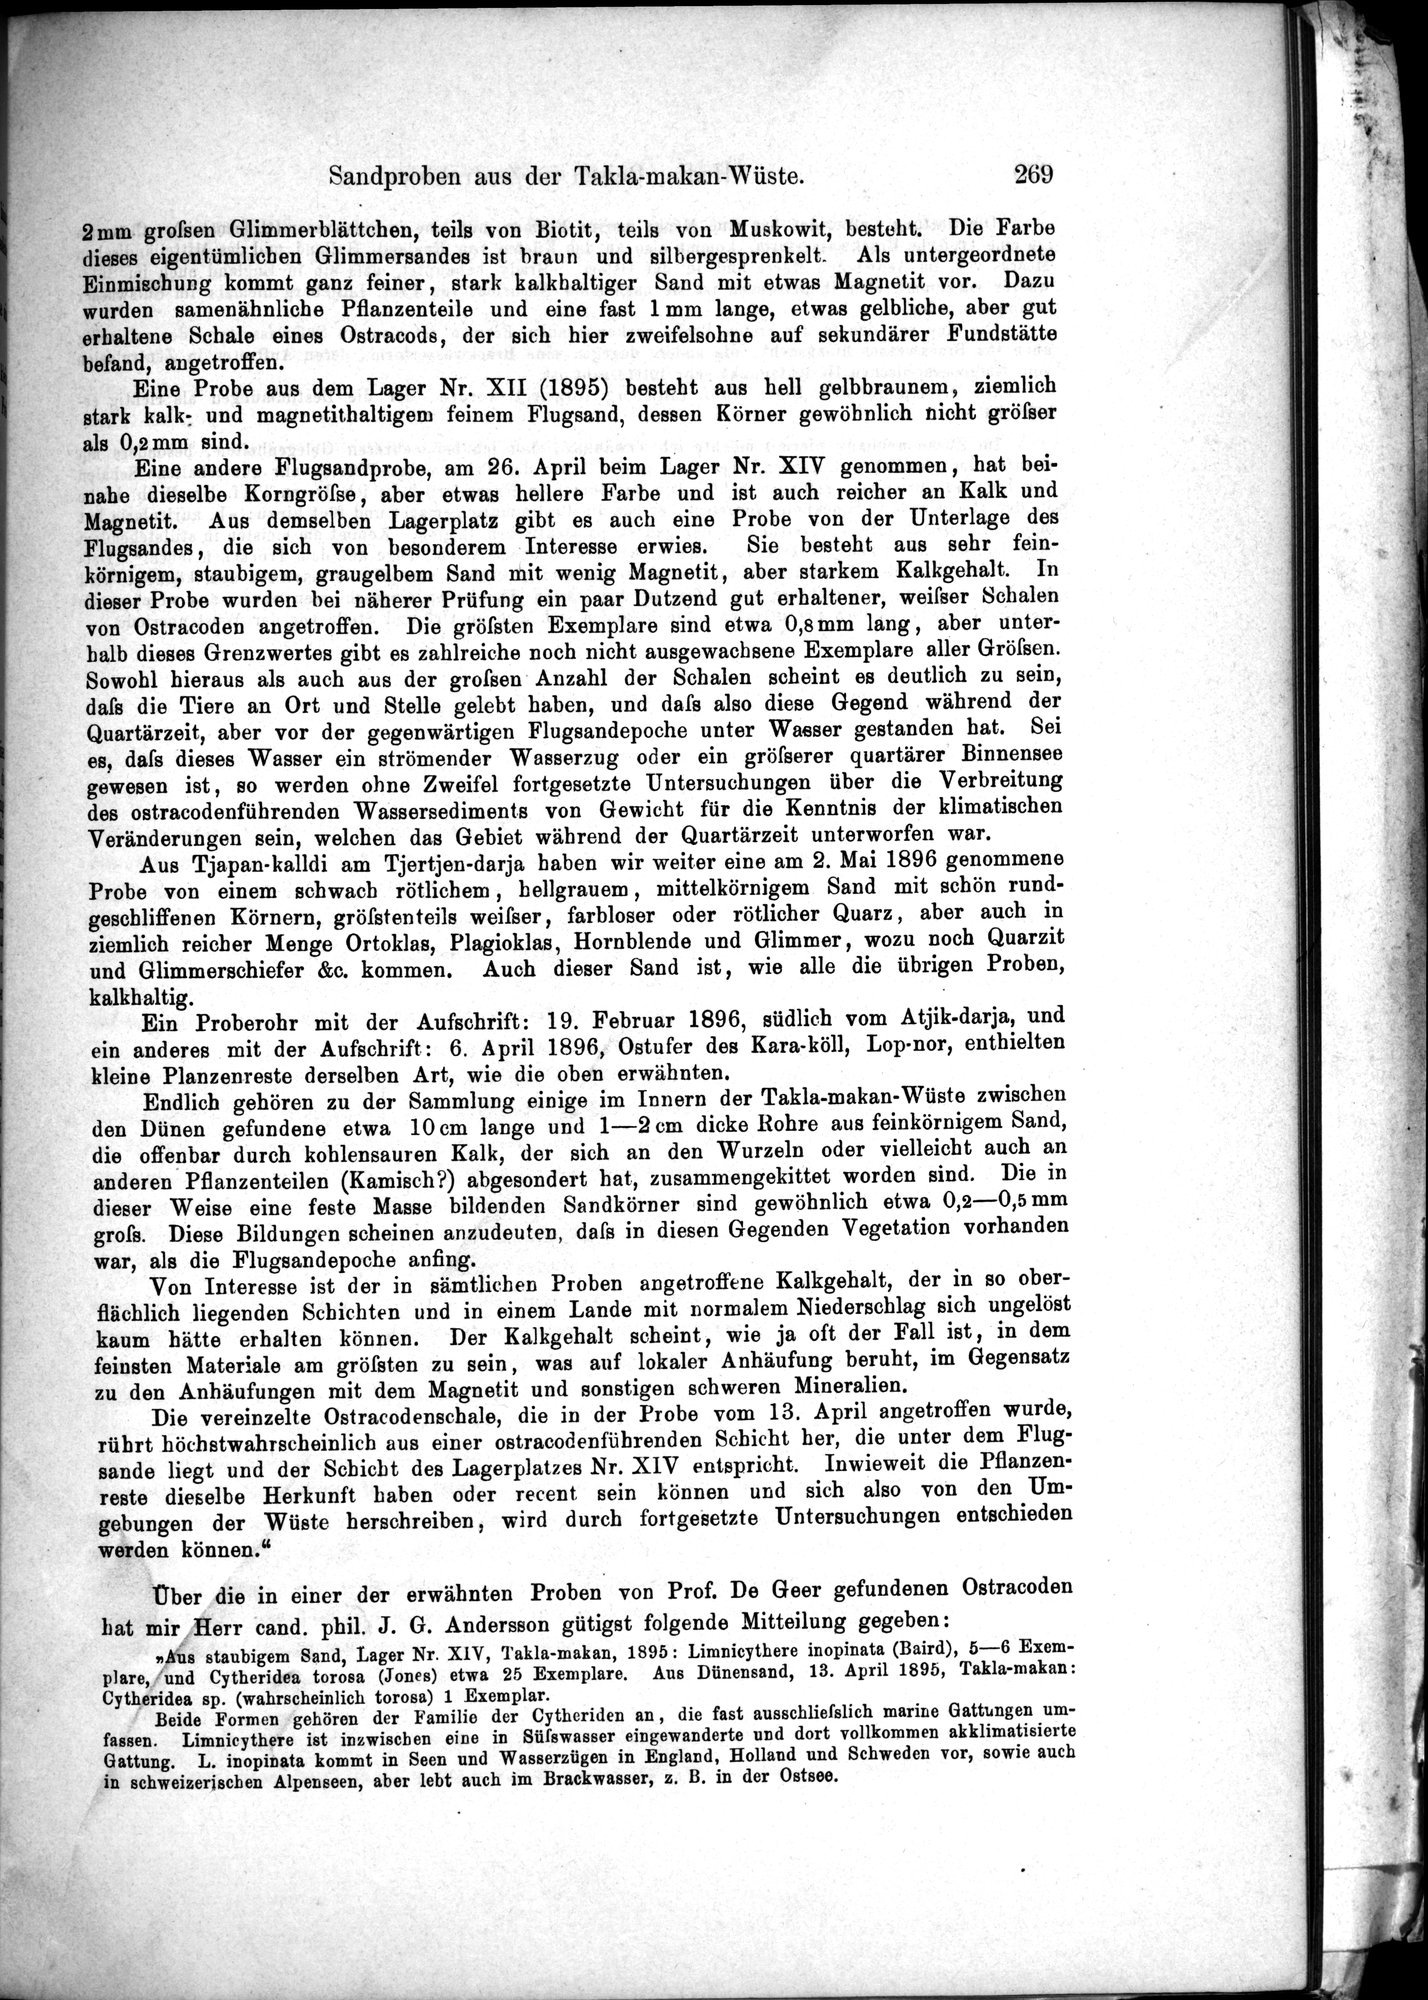 Die Geographische-Wissenschaftlichen Ergebnisse meiner Reisen in Zentralasien, 1894-1897 : vol.1 / Page 281 (Grayscale High Resolution Image)